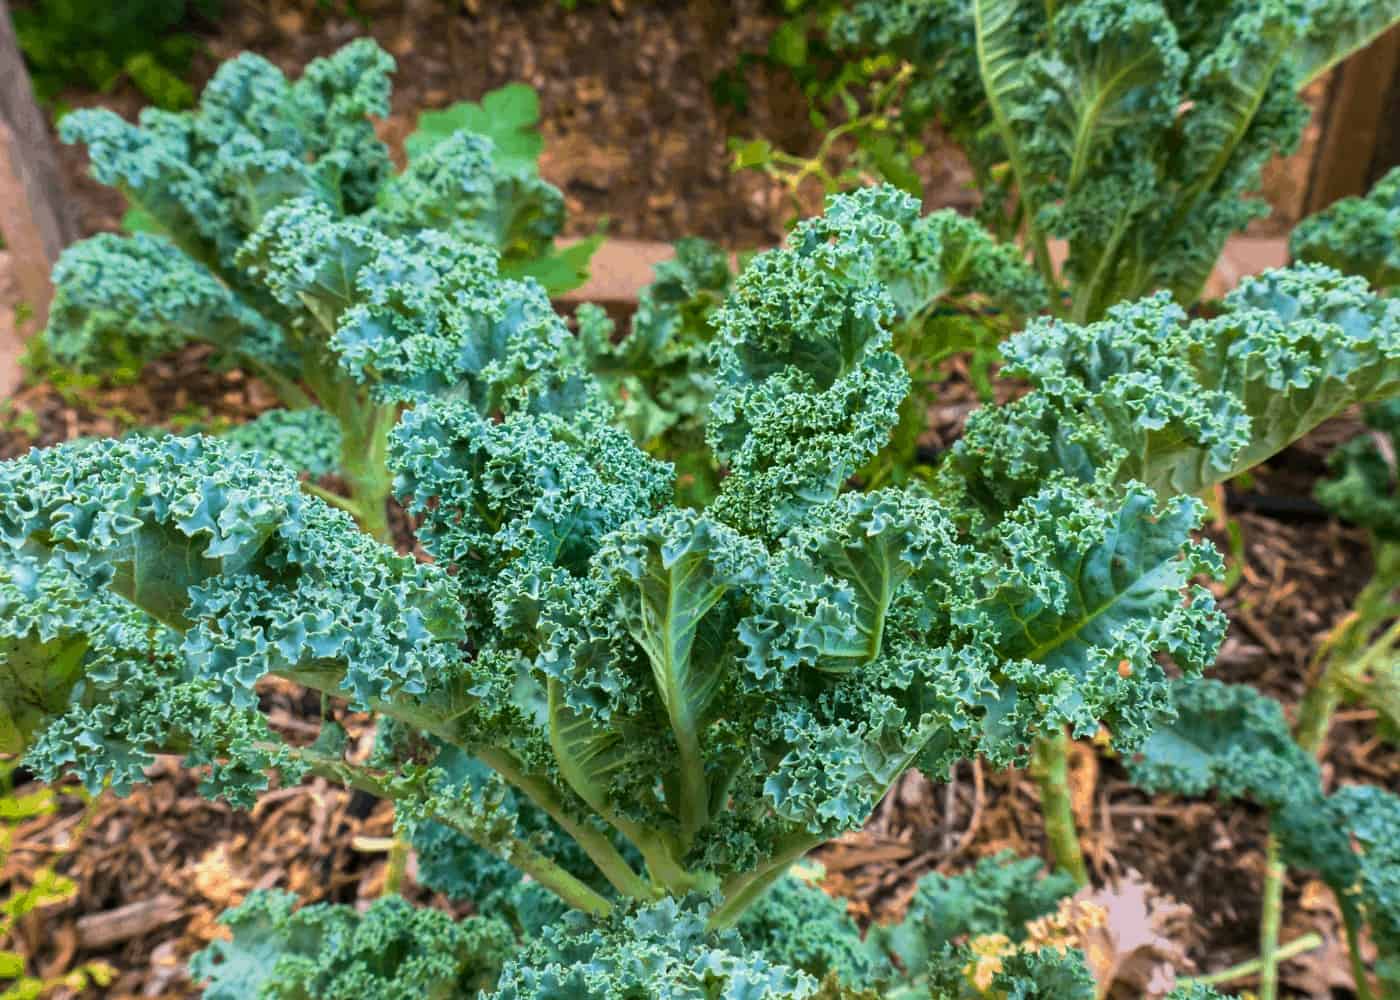 Kale growing